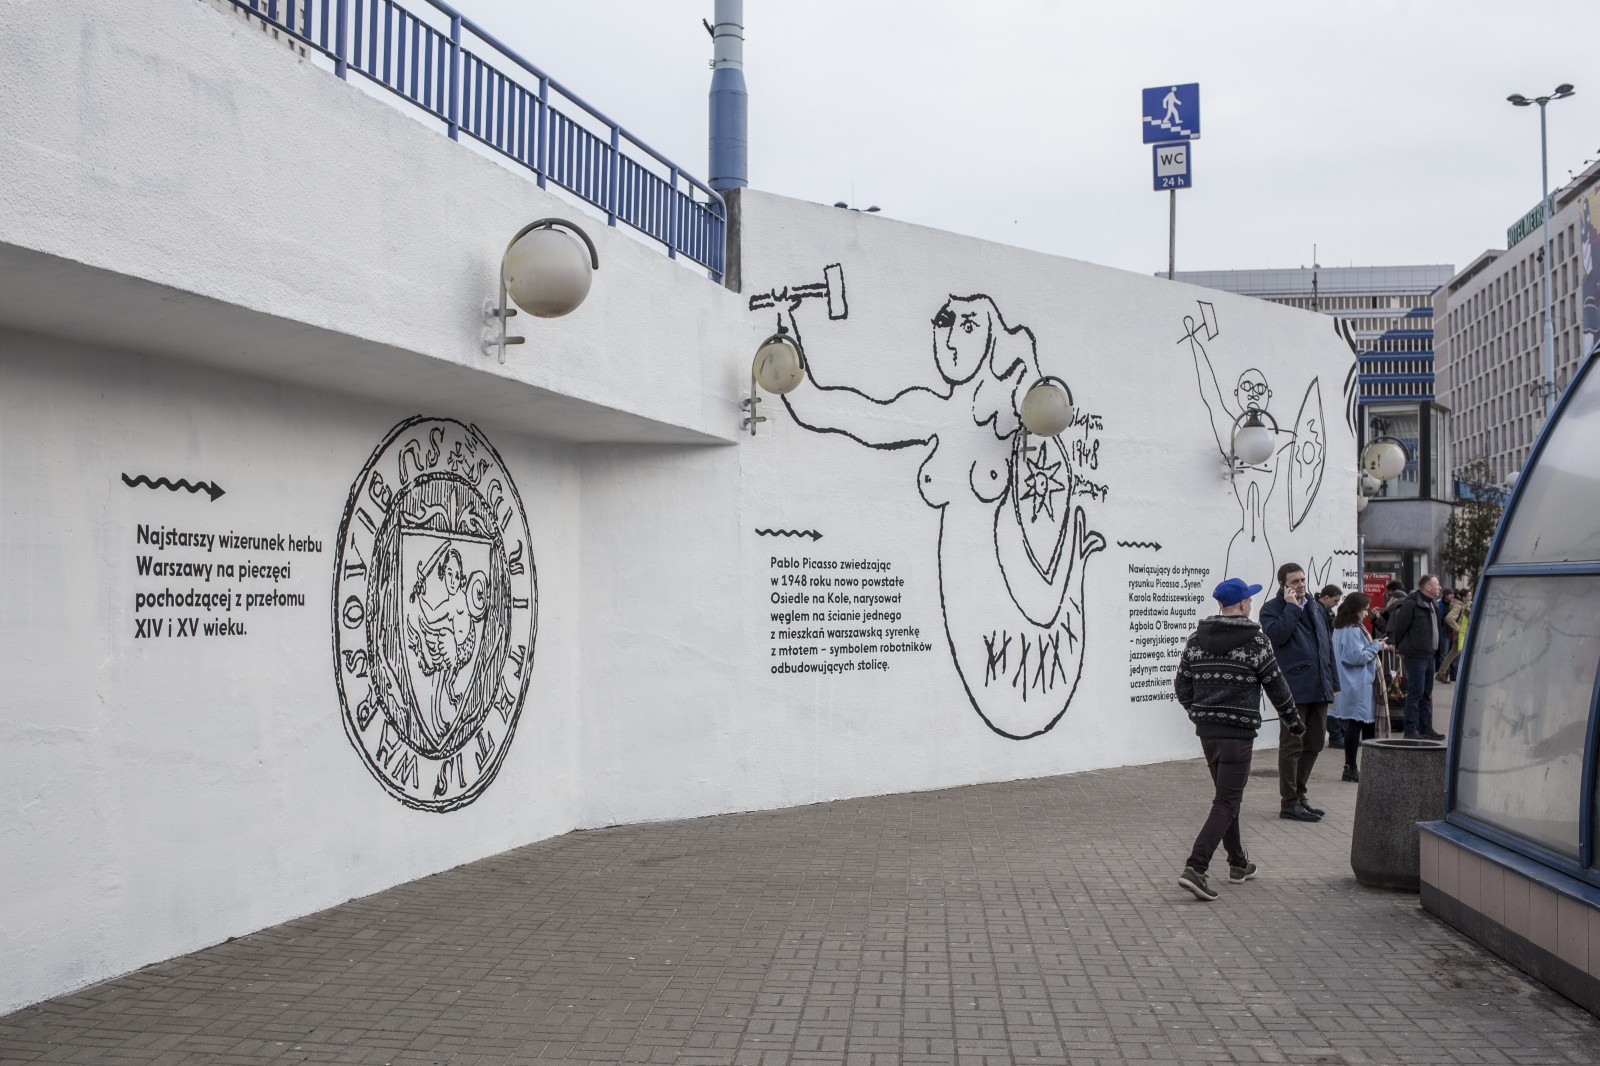 Mural promujący wystawę w Muzeum nad Wisłą w Warszawie | Syrena herbem twym zwodnicza | Portfolio